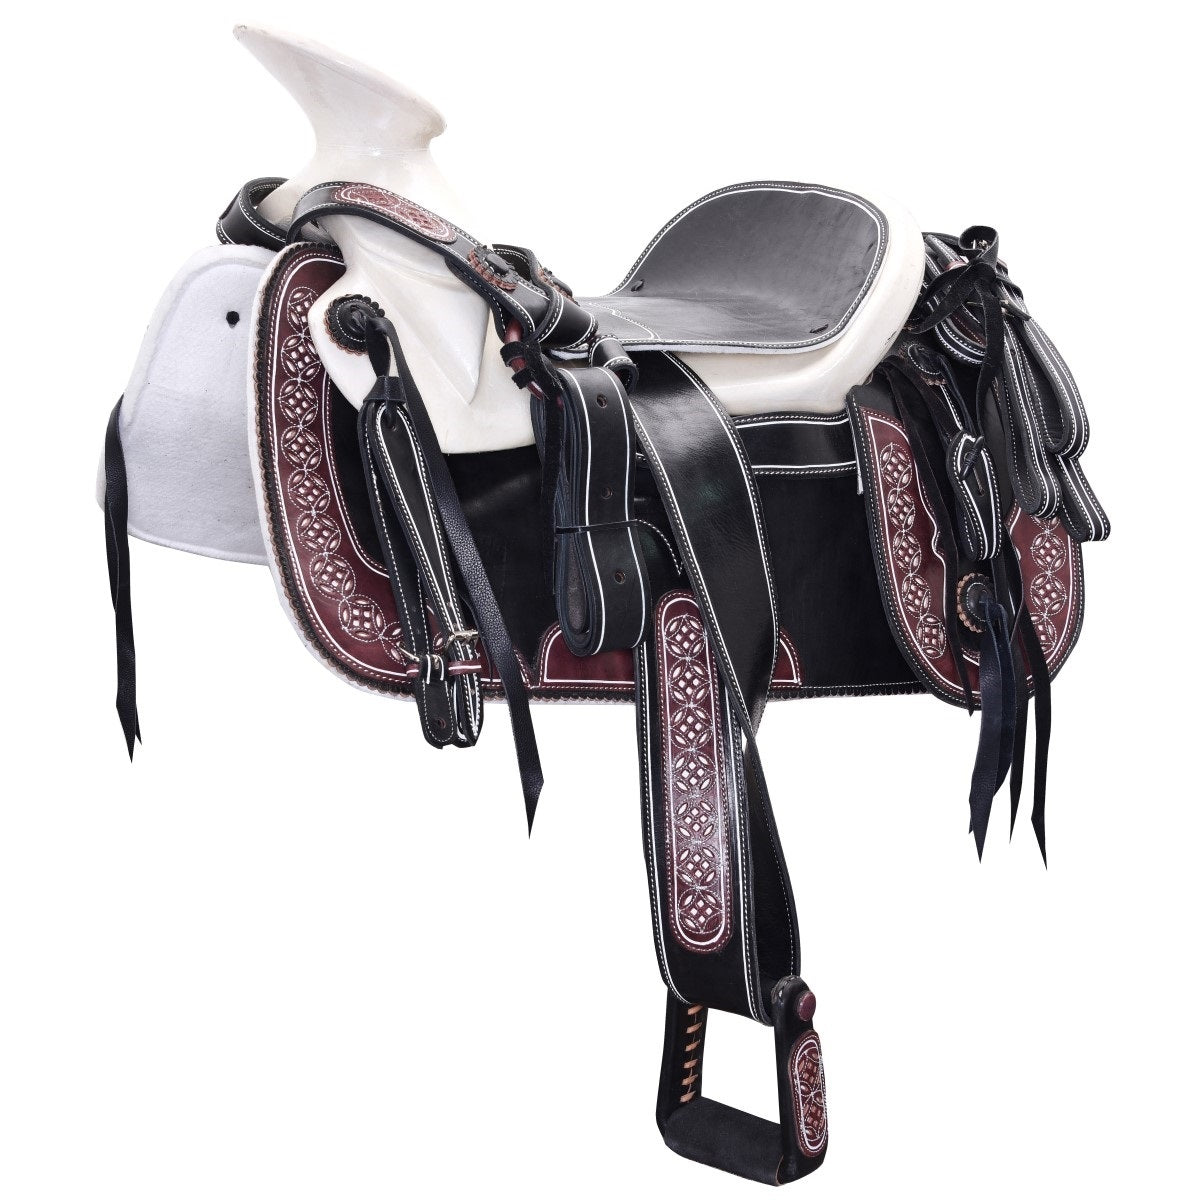 Silla de Montar para Caballo TM-WD1077-1044 Black-Wine - Horse Saddle